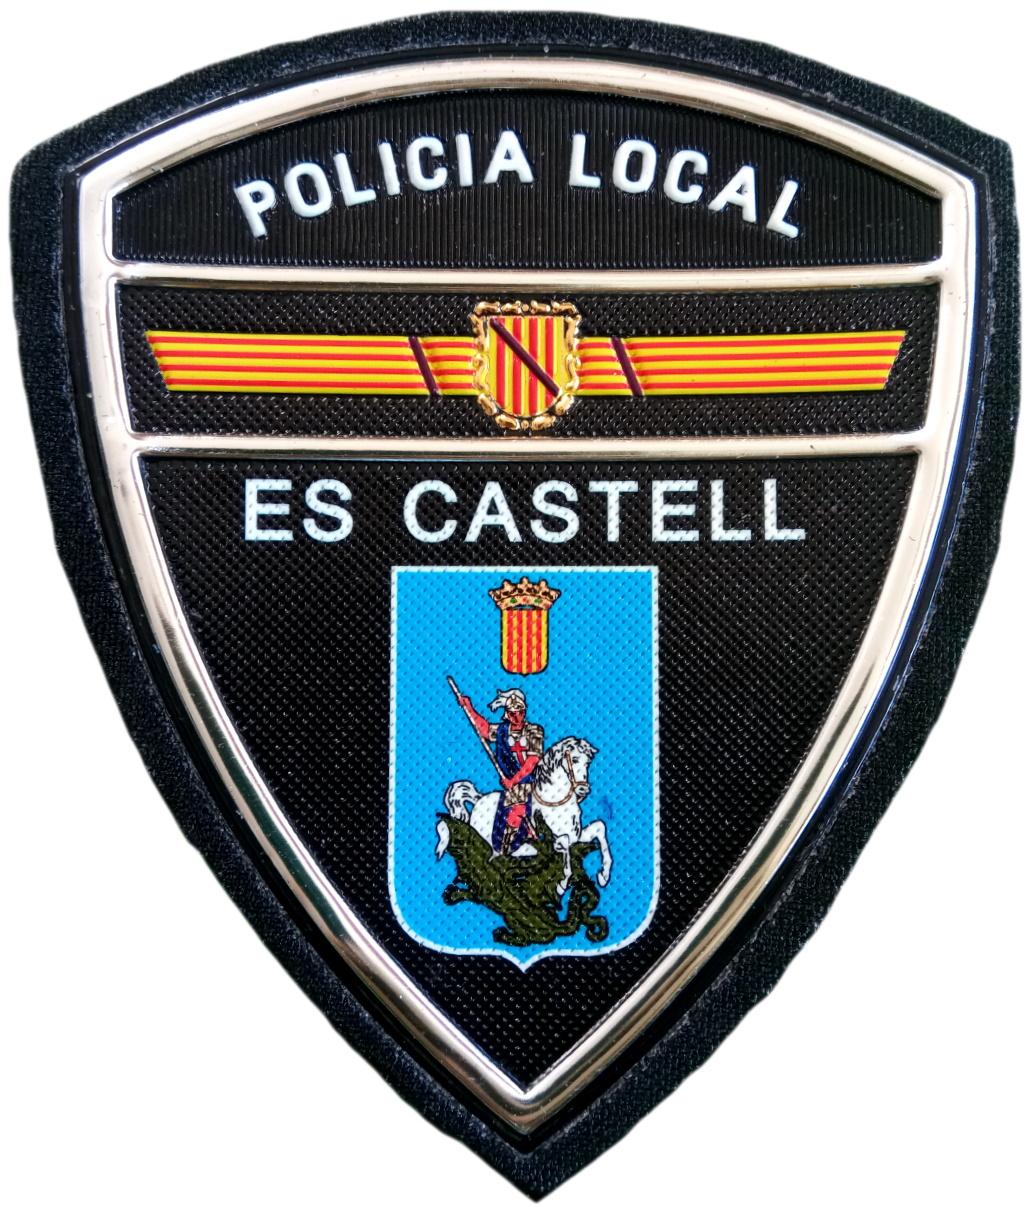 Policía Local Es Castell parche insignia emblema distintivo